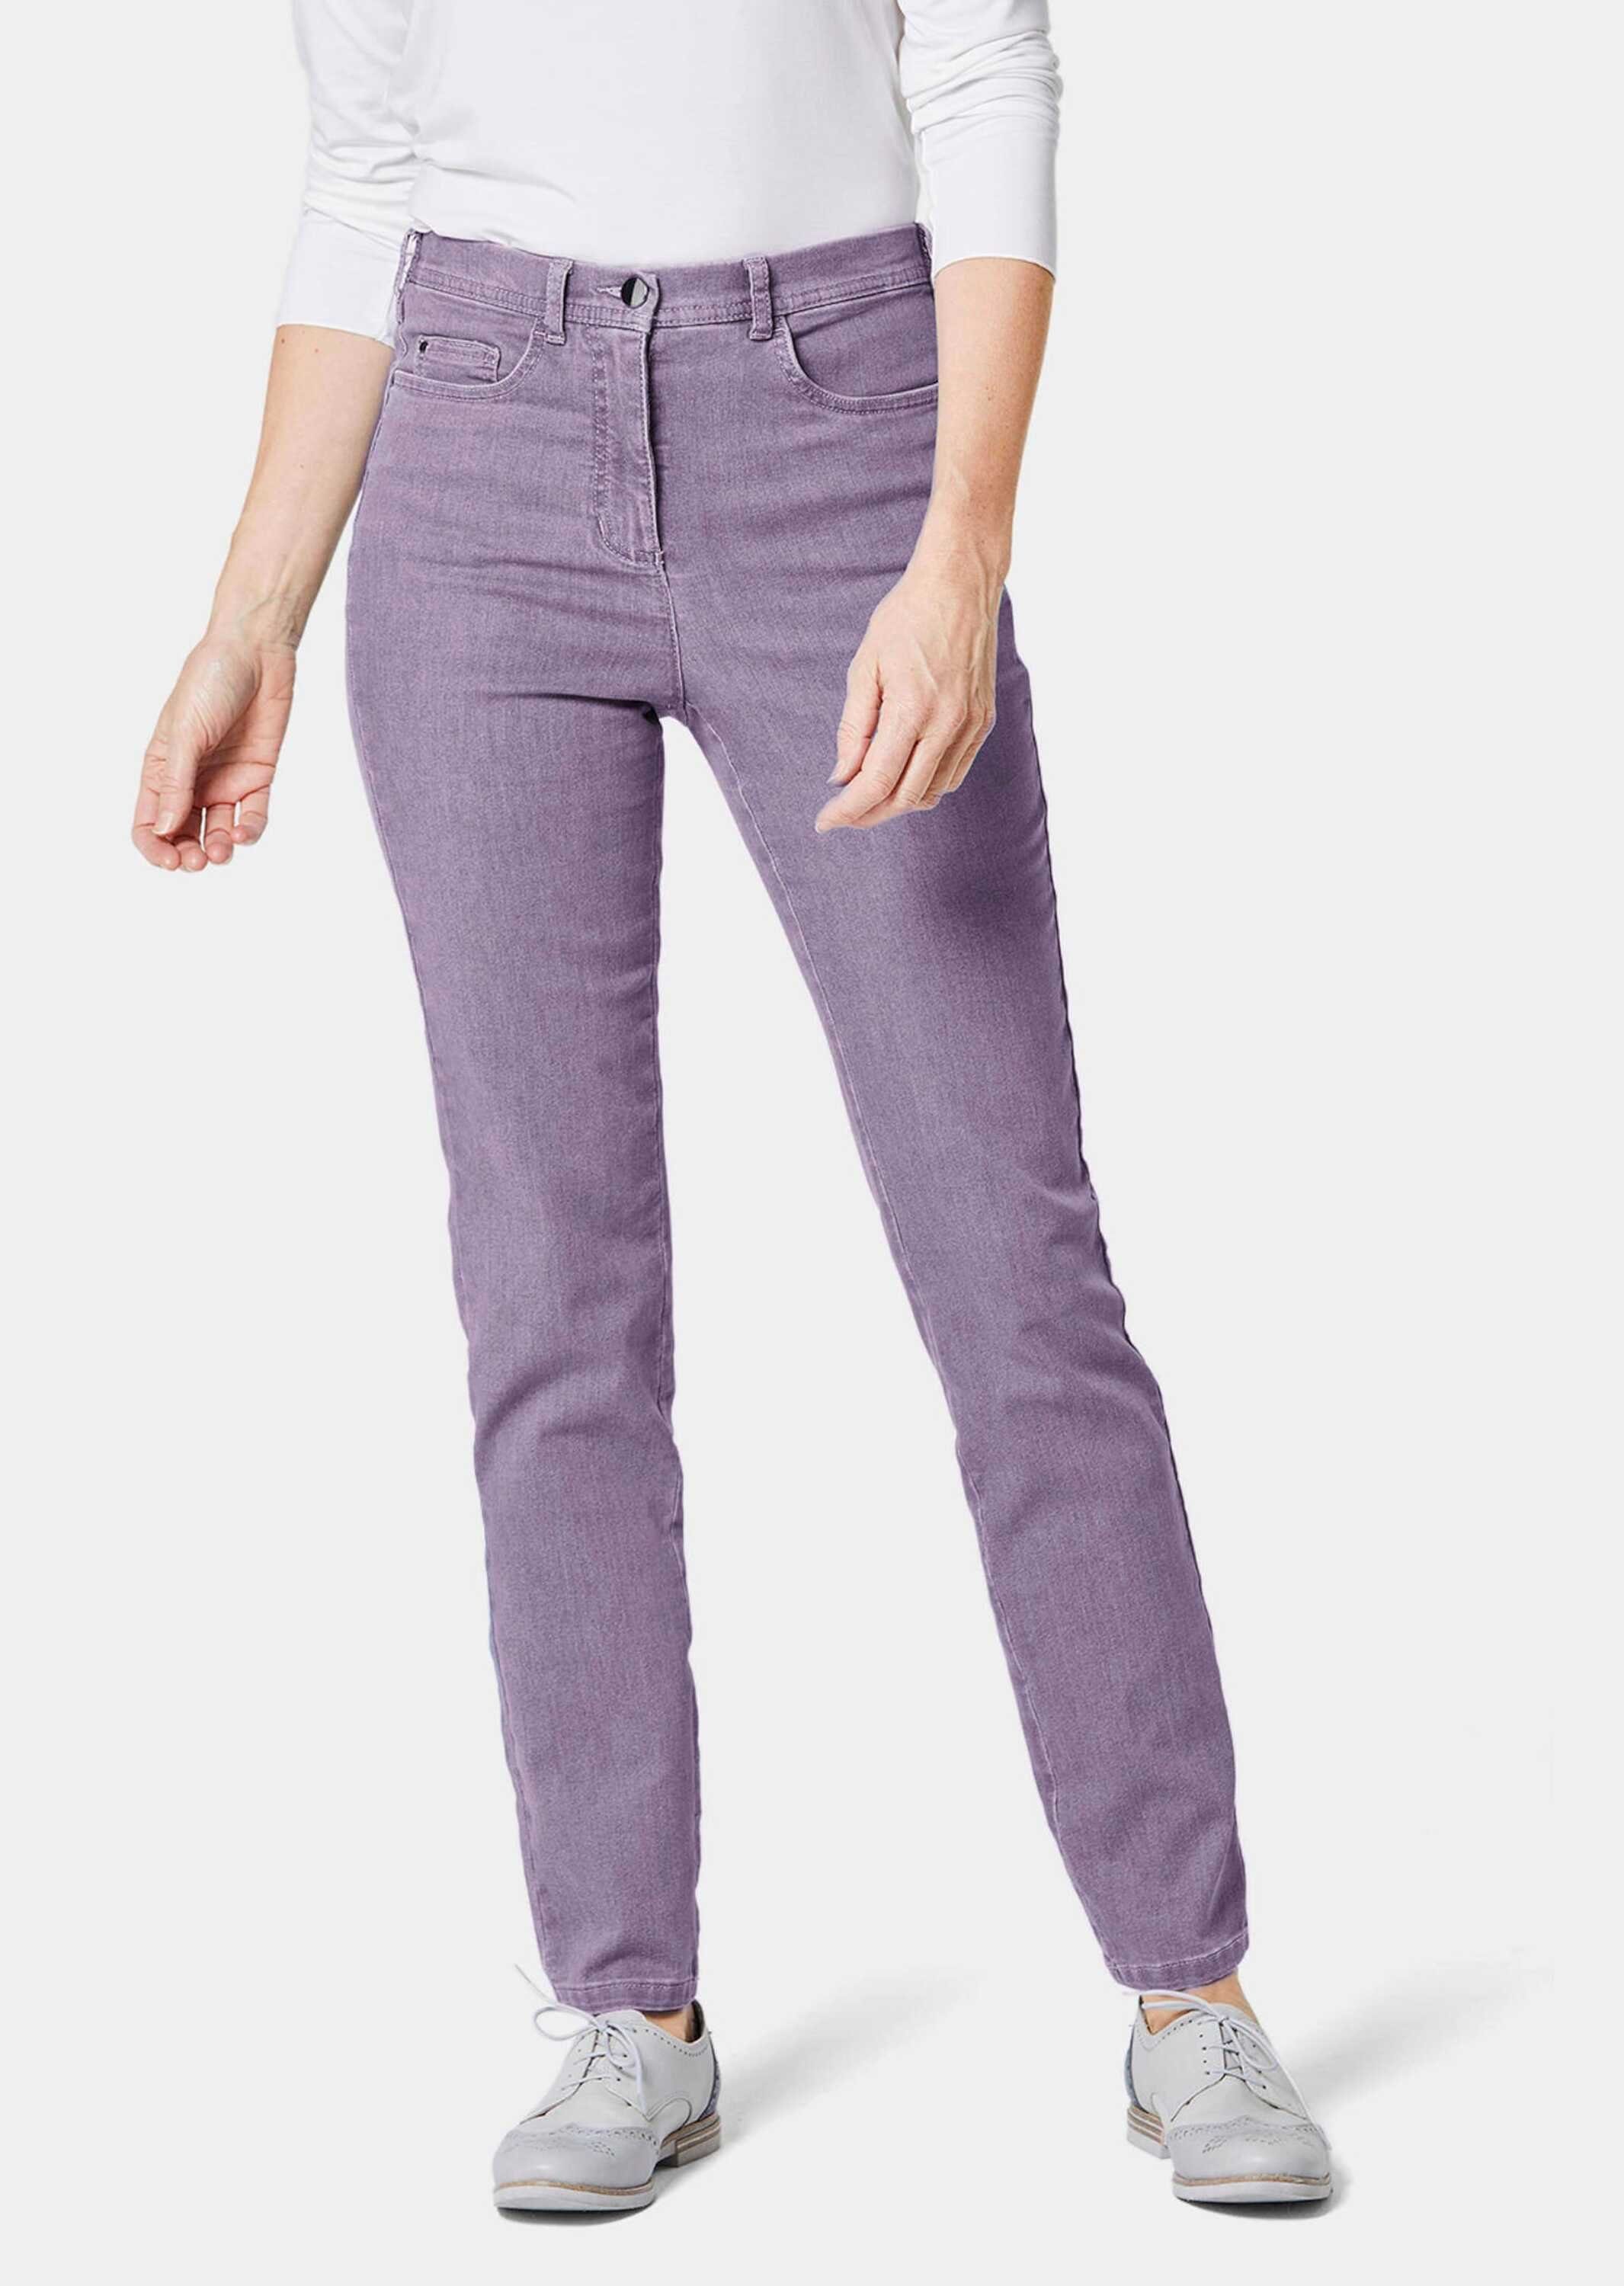 GOLDNER Bequeme Jeans Kurzgröße: Bequeme High-Stretch-Jeanshose lavendel